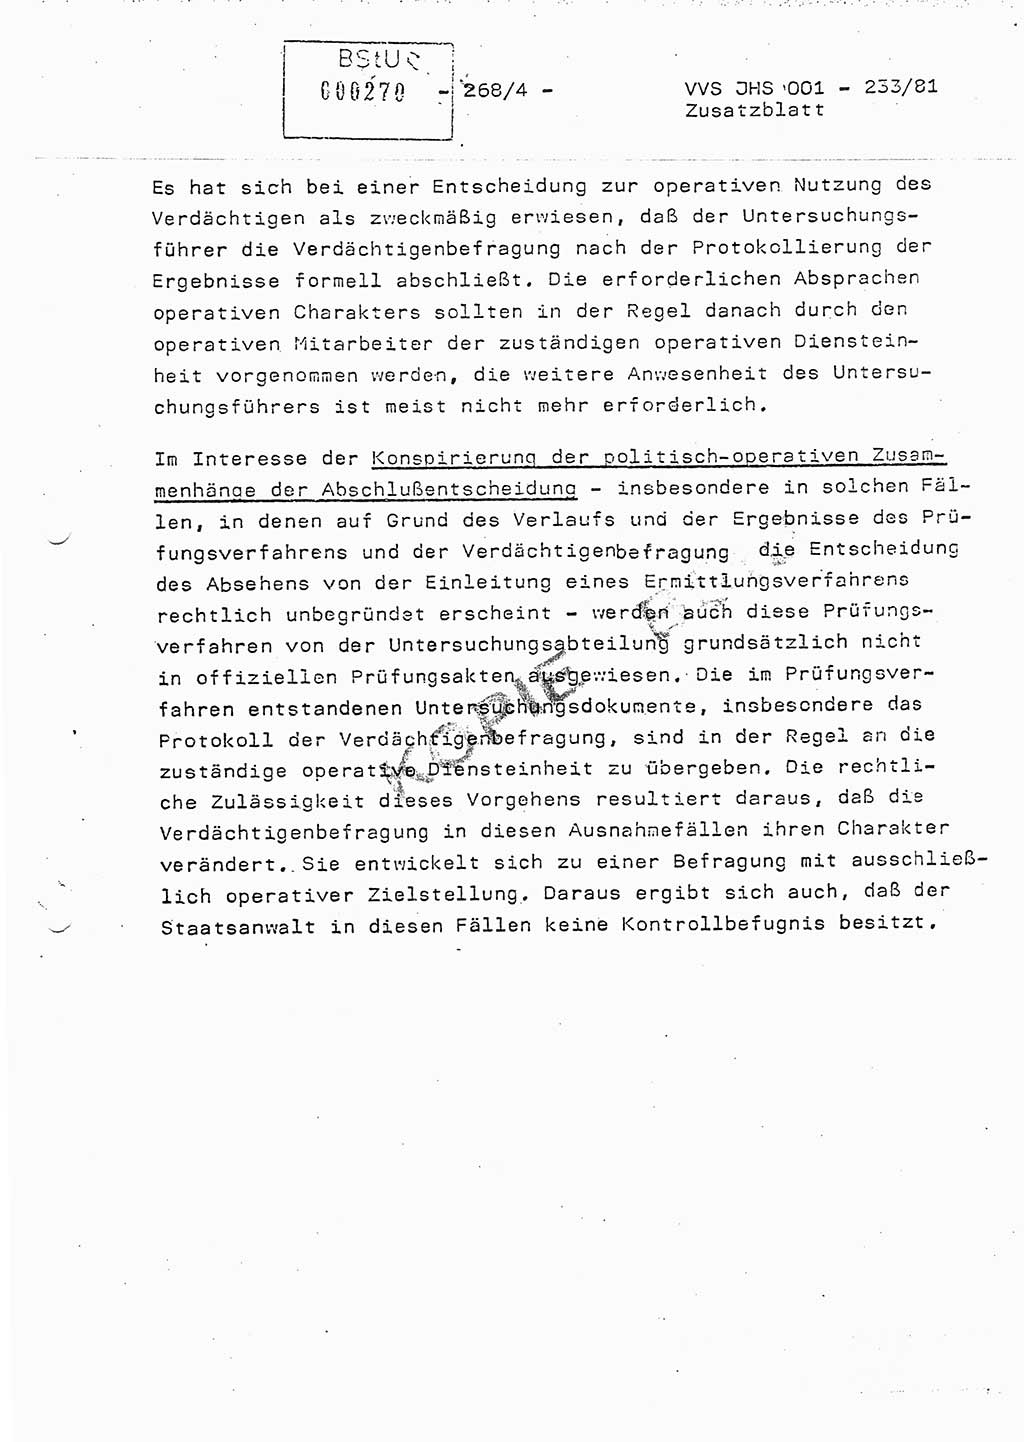 Dissertation Oberstleutnant Horst Zank (JHS), Oberstleutnant Dr. Karl-Heinz Knoblauch (JHS), Oberstleutnant Gustav-Adolf Kowalewski (HA Ⅸ), Oberstleutnant Wolfgang Plötner (HA Ⅸ), Ministerium für Staatssicherheit (MfS) [Deutsche Demokratische Republik (DDR)], Juristische Hochschule (JHS), Vertrauliche Verschlußsache (VVS) o001-233/81, Potsdam 1981, Blatt 268/4 (Diss. MfS DDR JHS VVS o001-233/81 1981, Bl. 268/4)